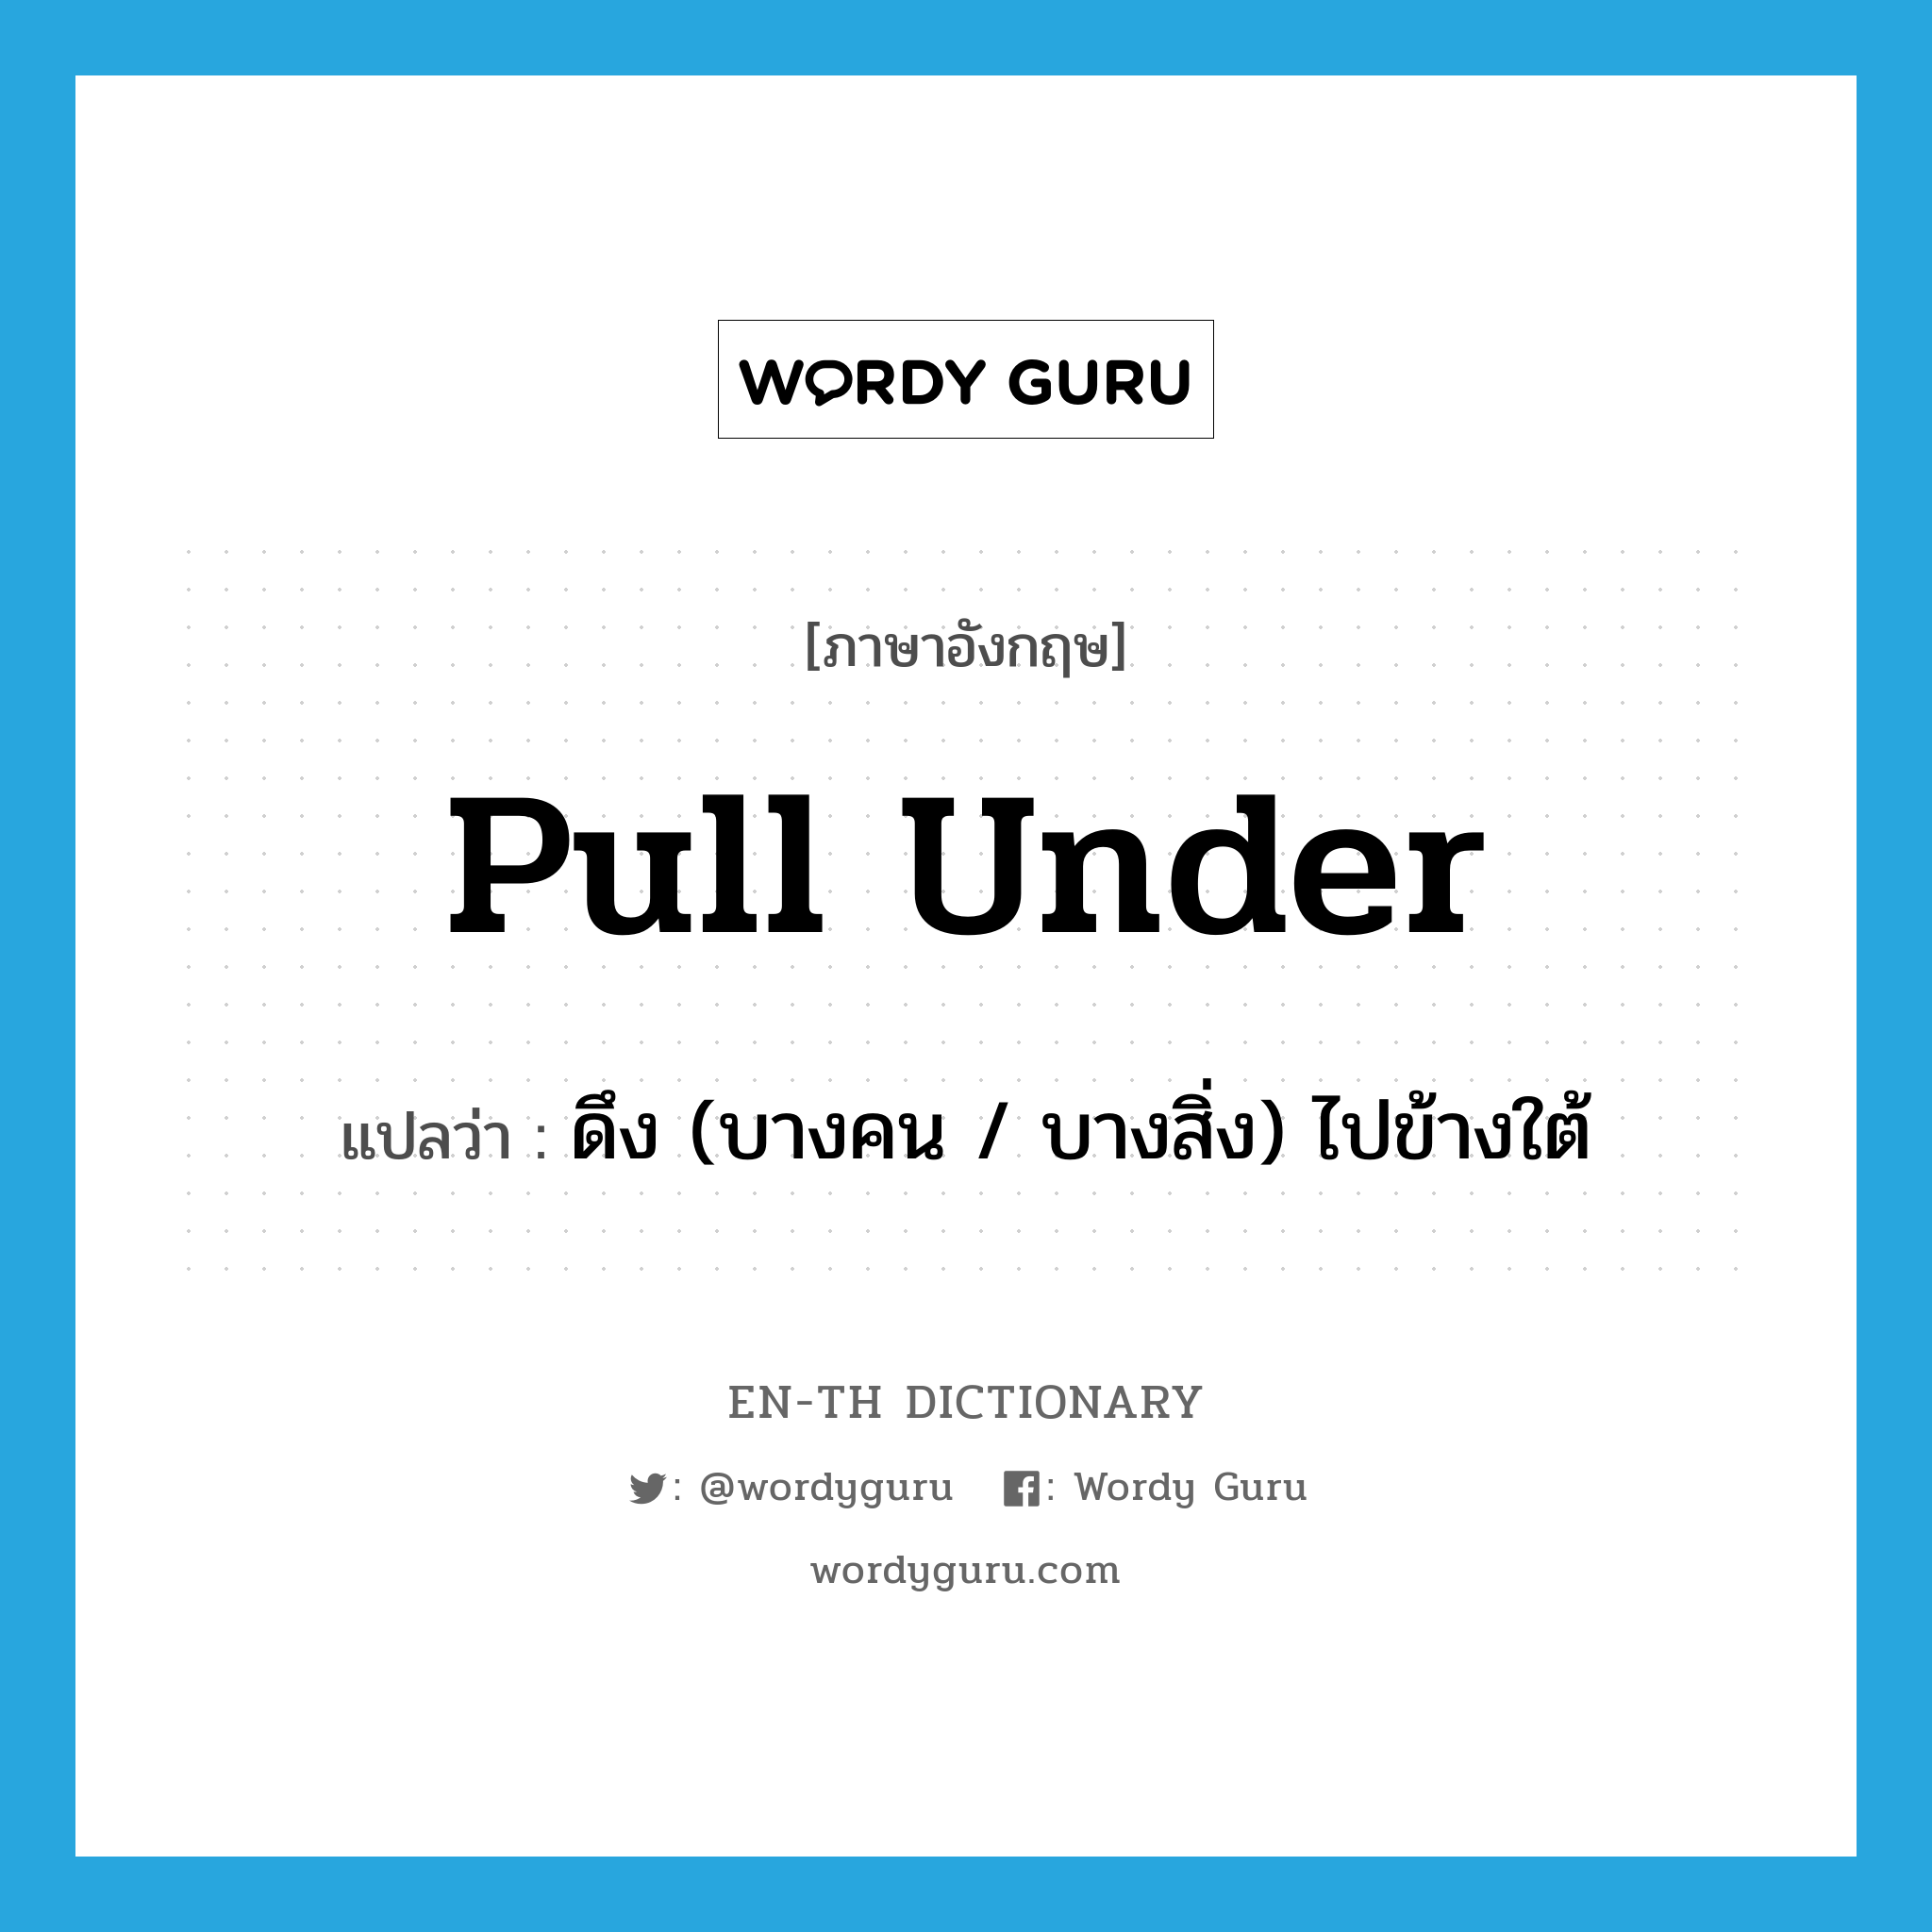 pull under แปลว่า?, คำศัพท์ภาษาอังกฤษ pull under แปลว่า ดึง (บางคน / บางสิ่ง) ไปข้างใต้ ประเภท PHRV หมวด PHRV